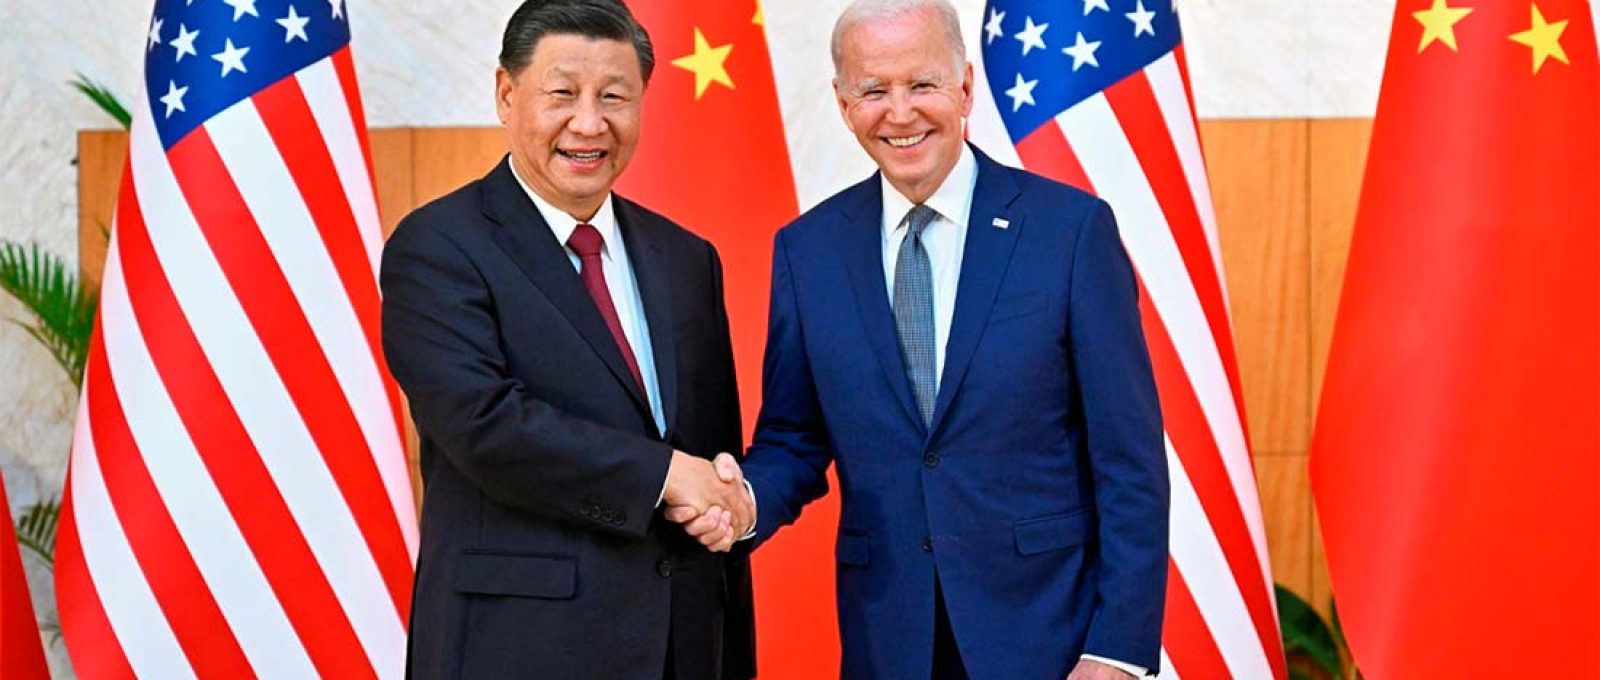 O presidente chinês, Xi Jinping, reúne-se com o presidente dos EUA, Joe Biden, em 14 de novembro de 2022, à margem da Cúpula dos Líderes do G20, em Bali, na Indonésia (Xinhua).